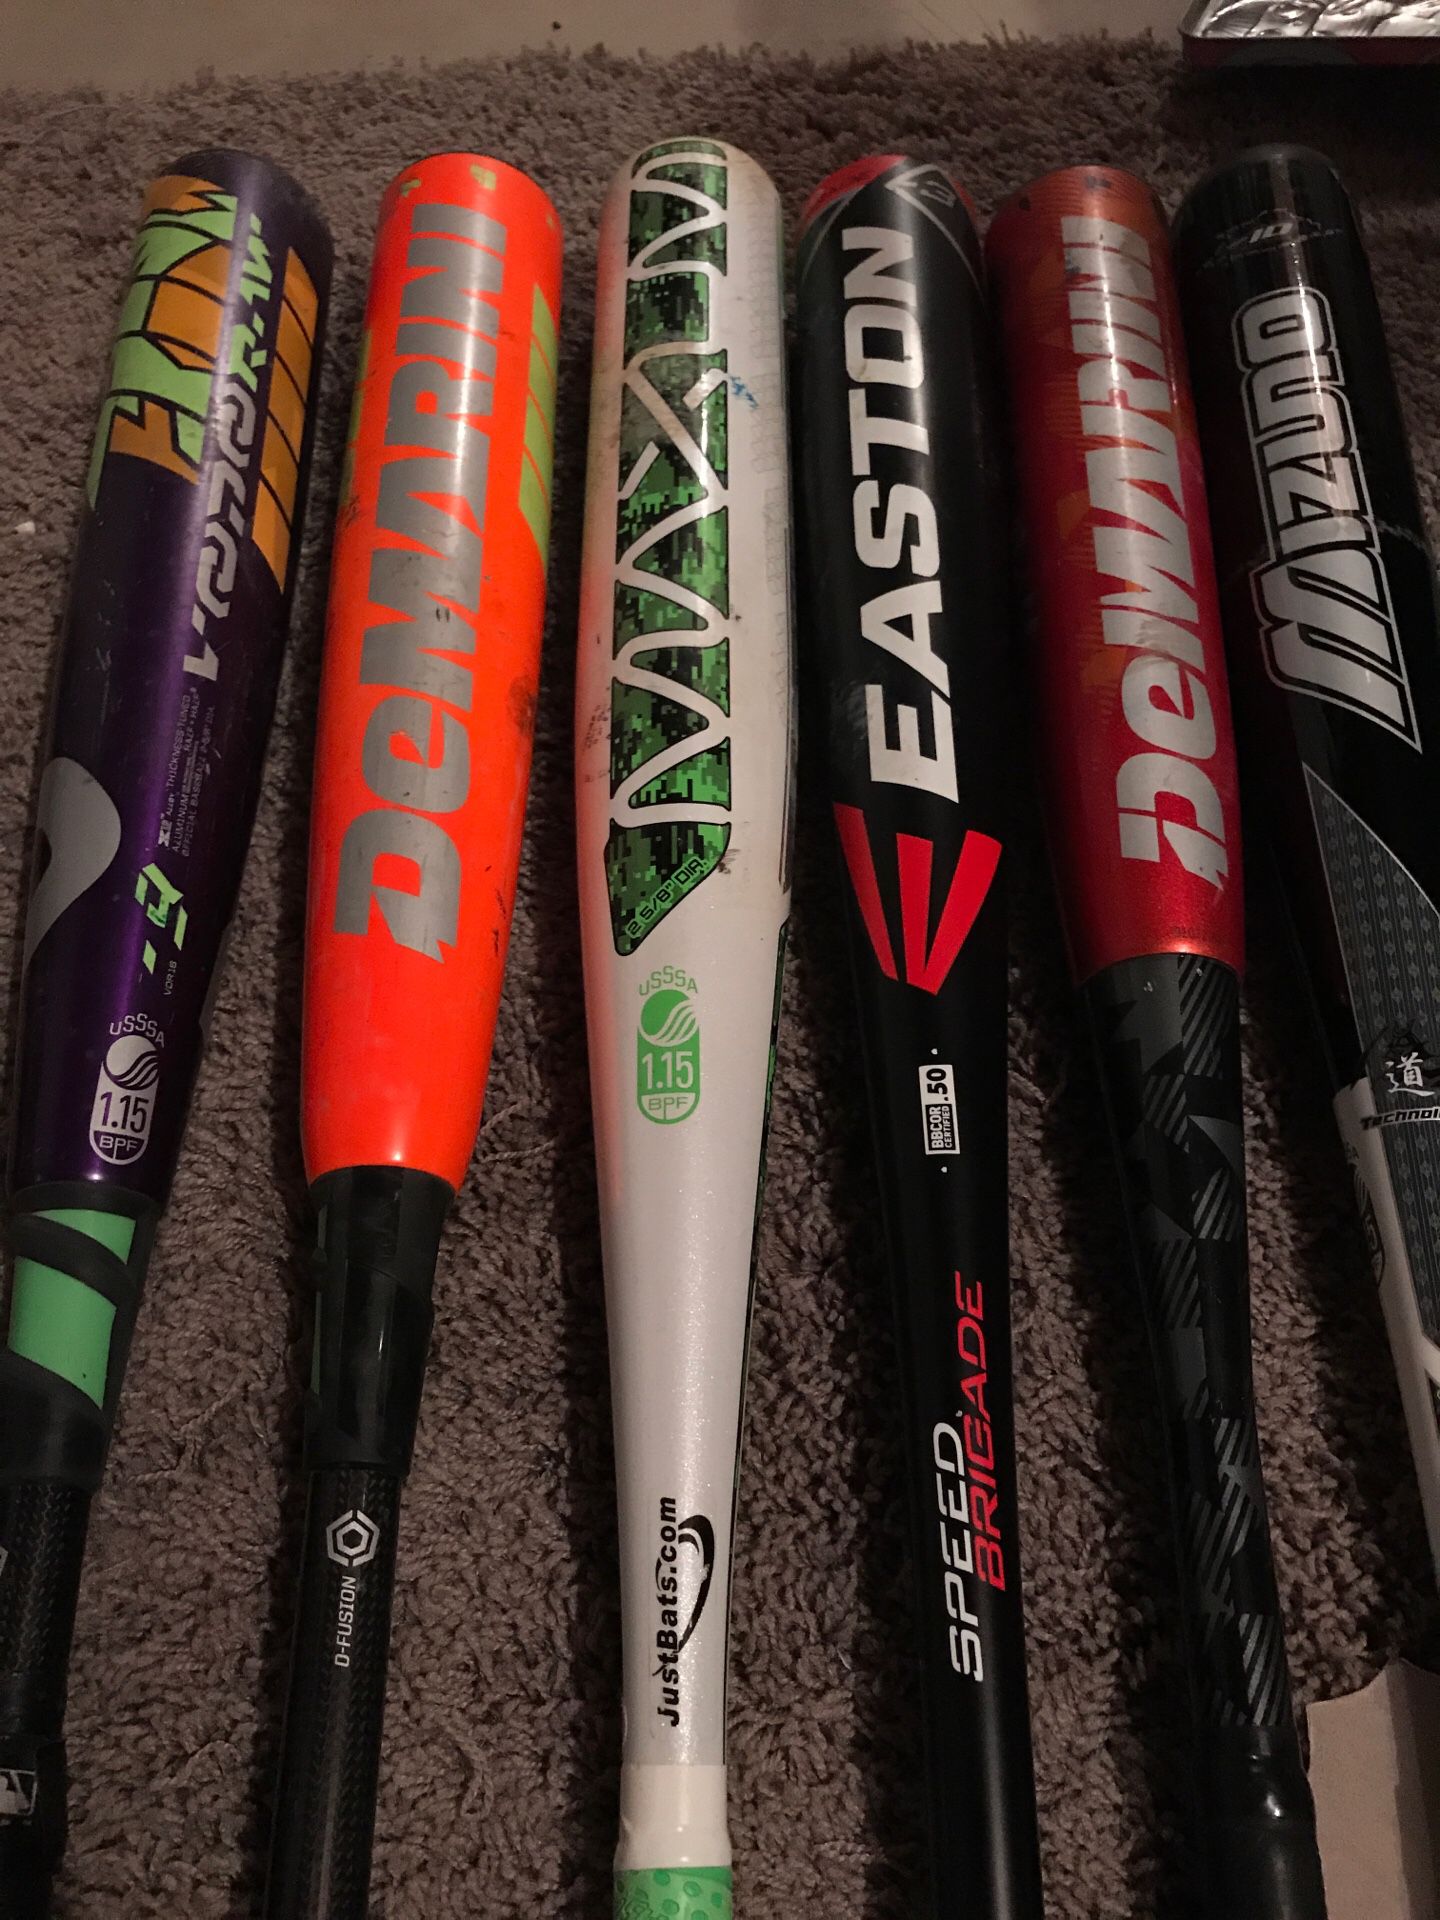 Assorted baseball bats